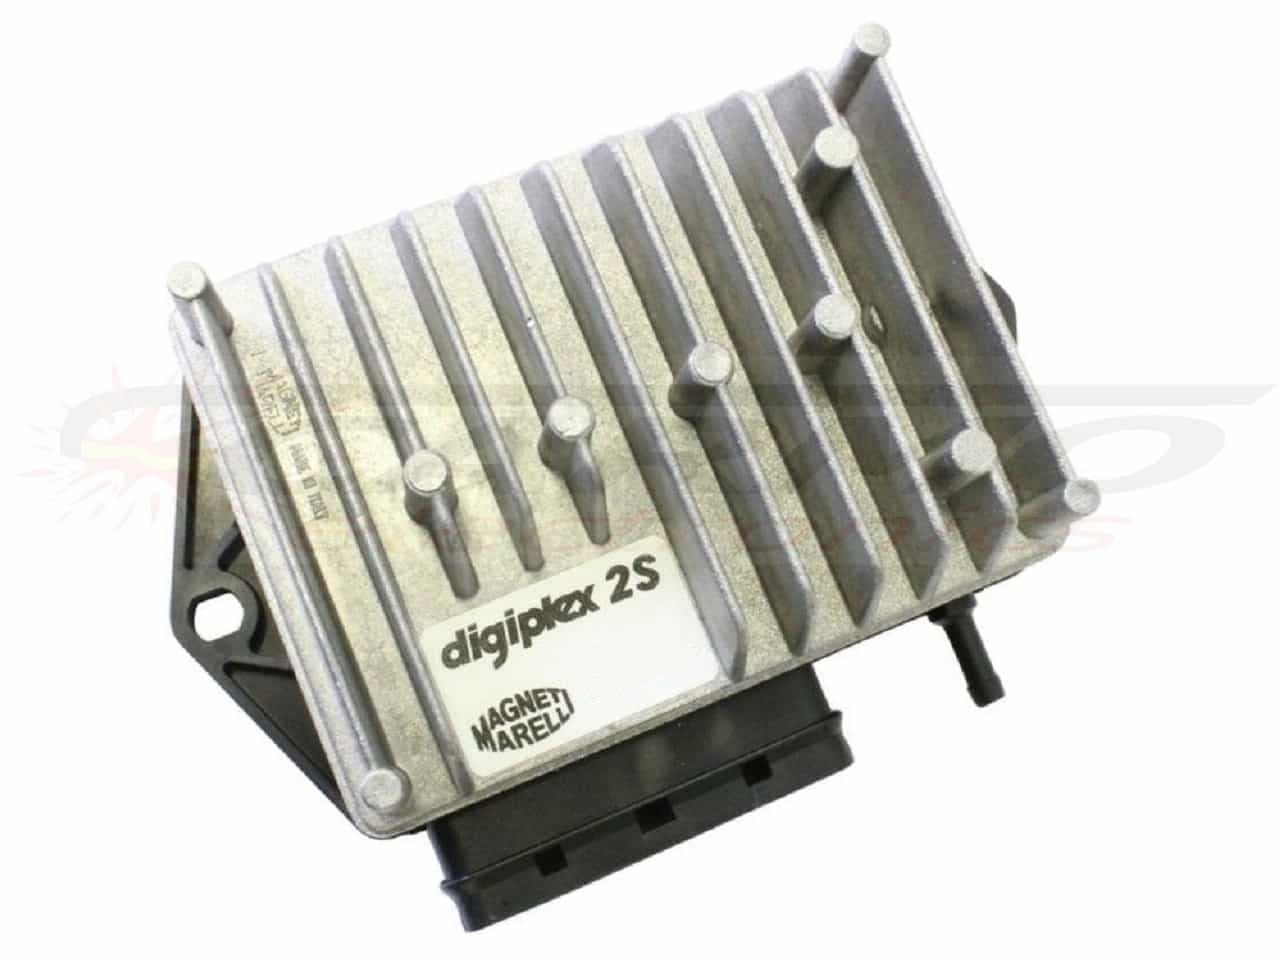 Digiplex 2S CDI TCI box